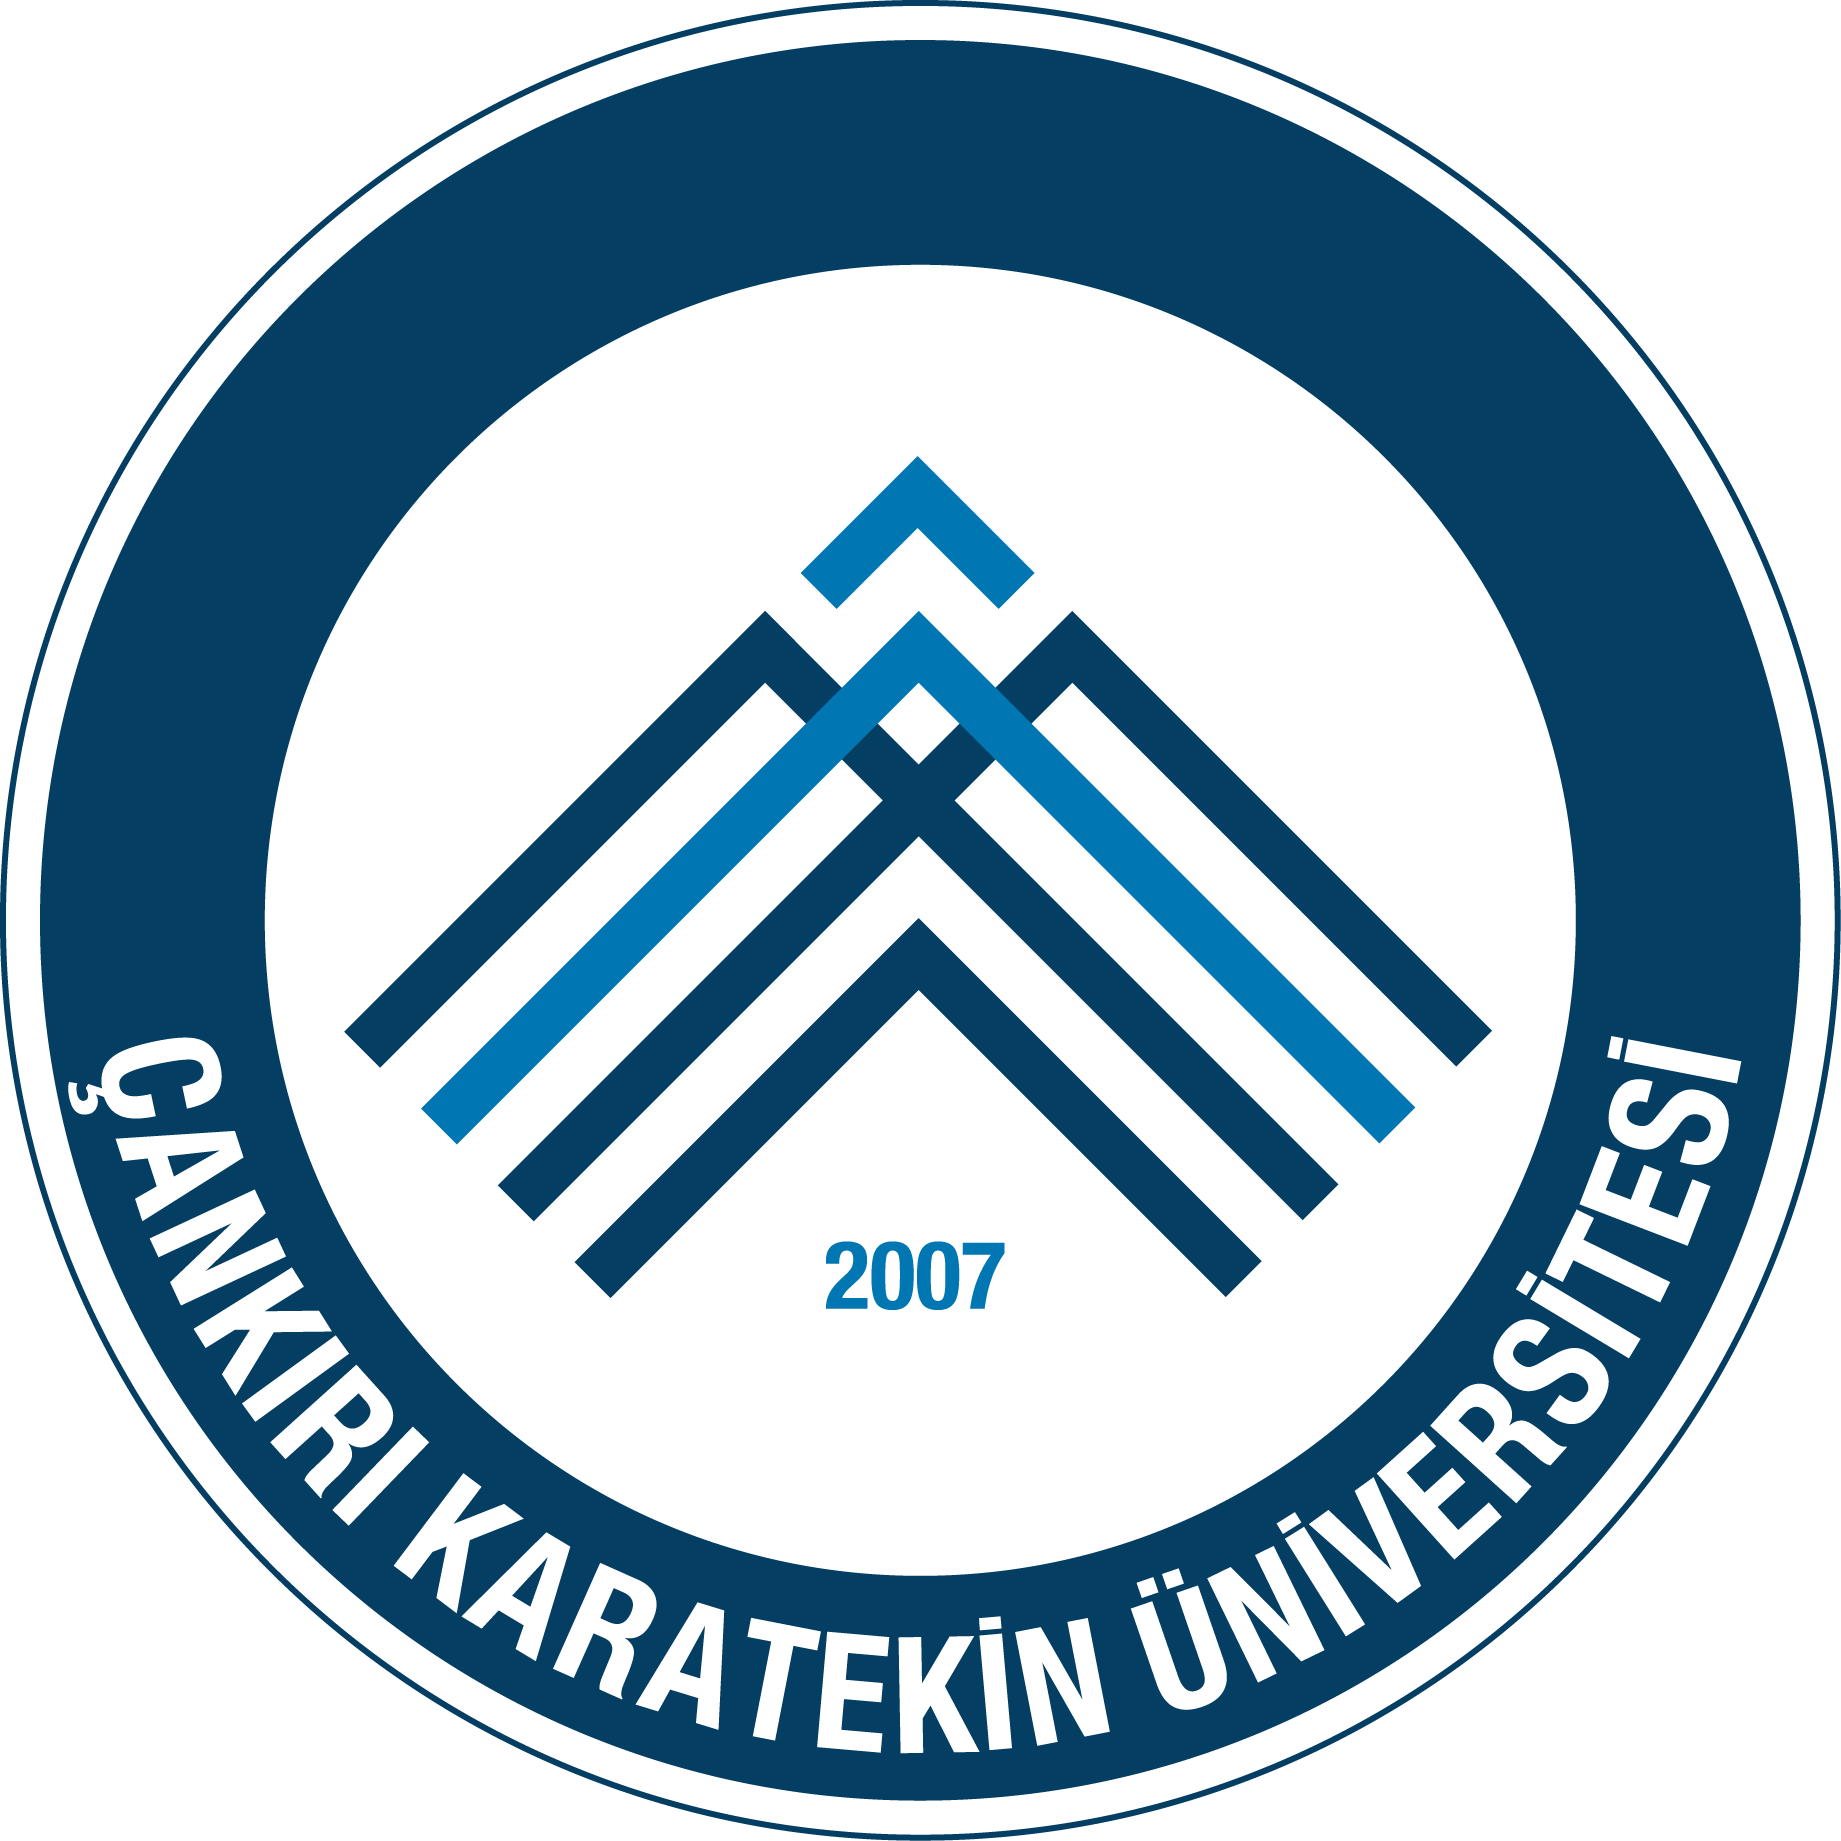 Çank?r? Karatekin Üniversitesi Logo - Arma